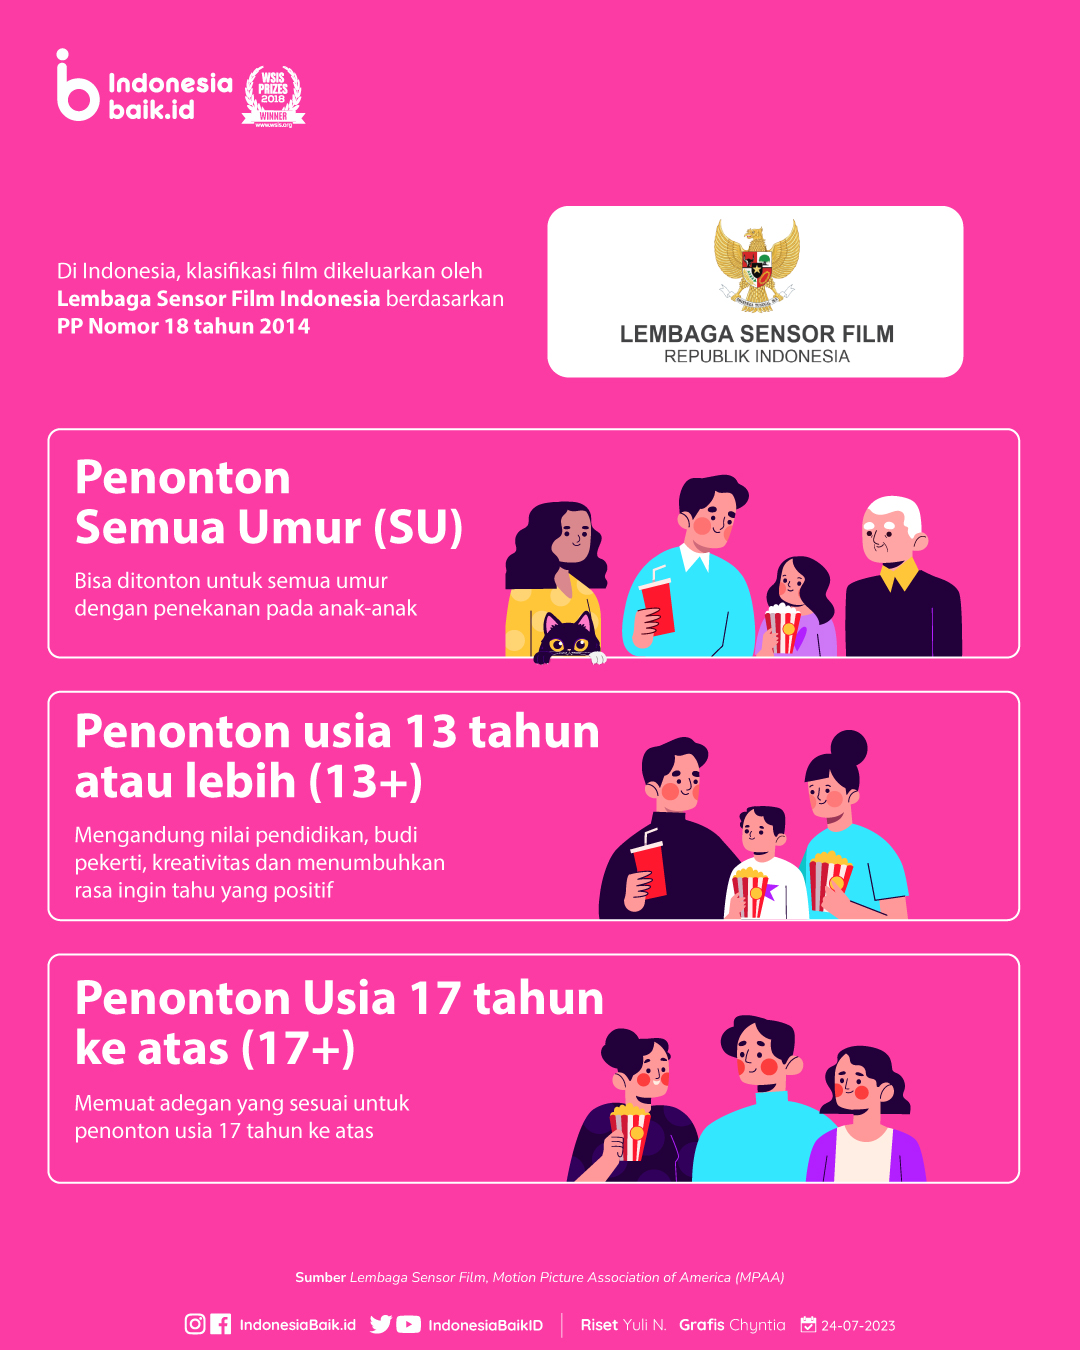 Kategori rating film di Indonesia